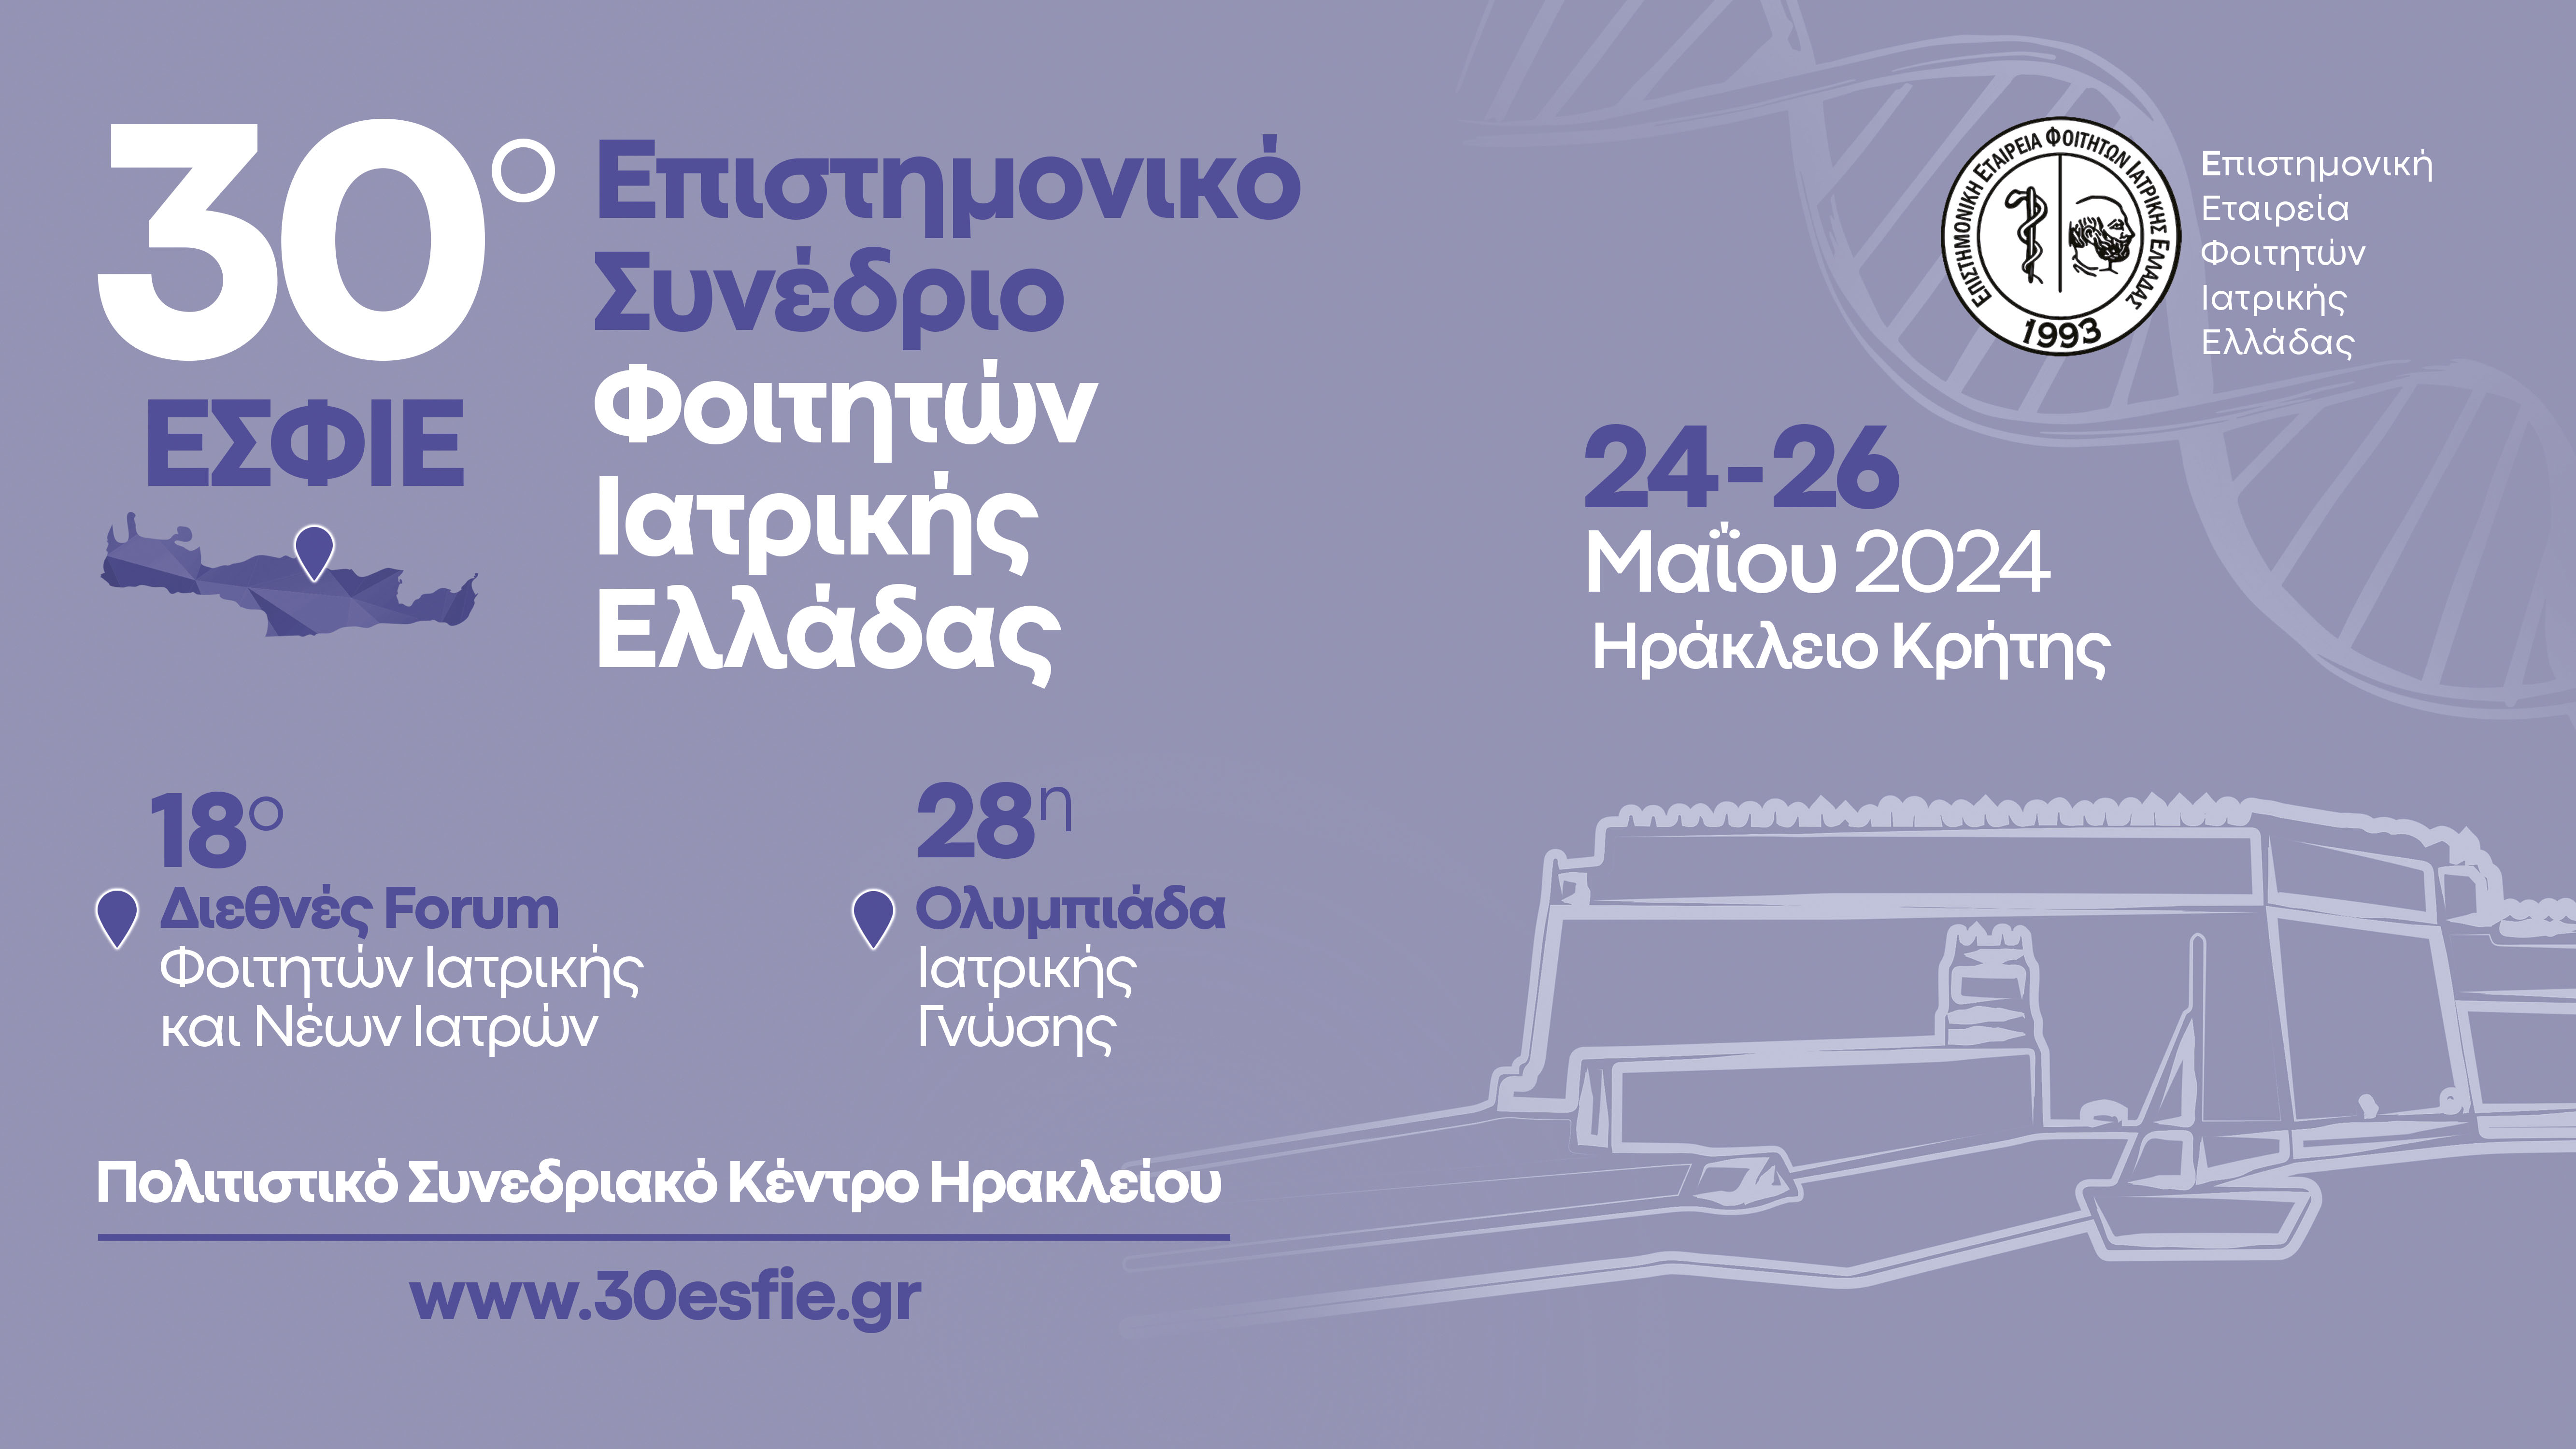 30ο Επιστημονικό Συνέδριο Φοιτητών Ιατρικής Ελλάδας (ΕΣΦΙΕ) & 18ο Διεθνές Forum Φοιτητών Ιατρικής και Νέων Ιατρών